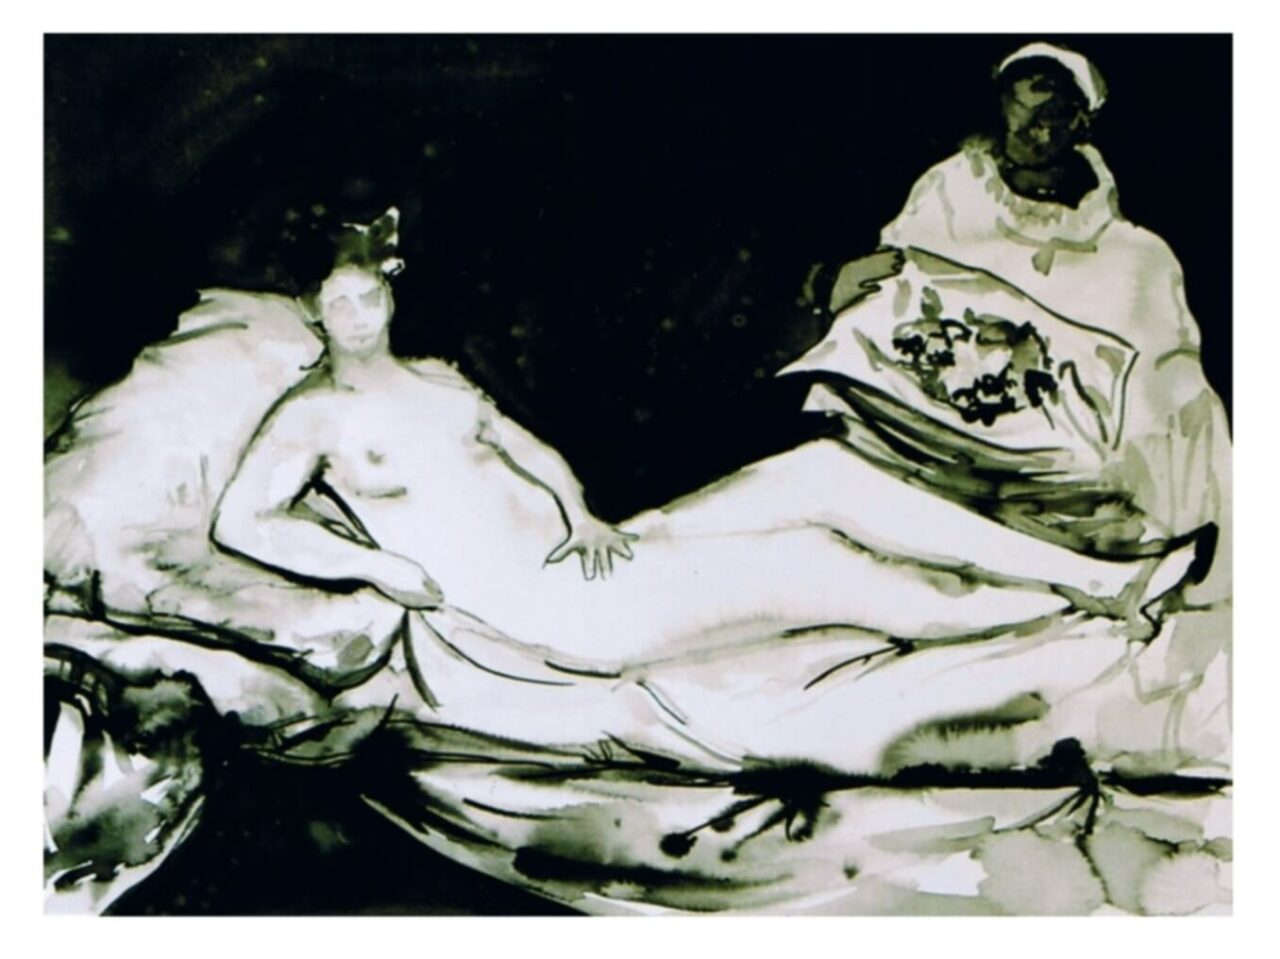 Olympia d'après Manet, encre de Chine sur papier mouillé, 50cm x 70cm, 2005.